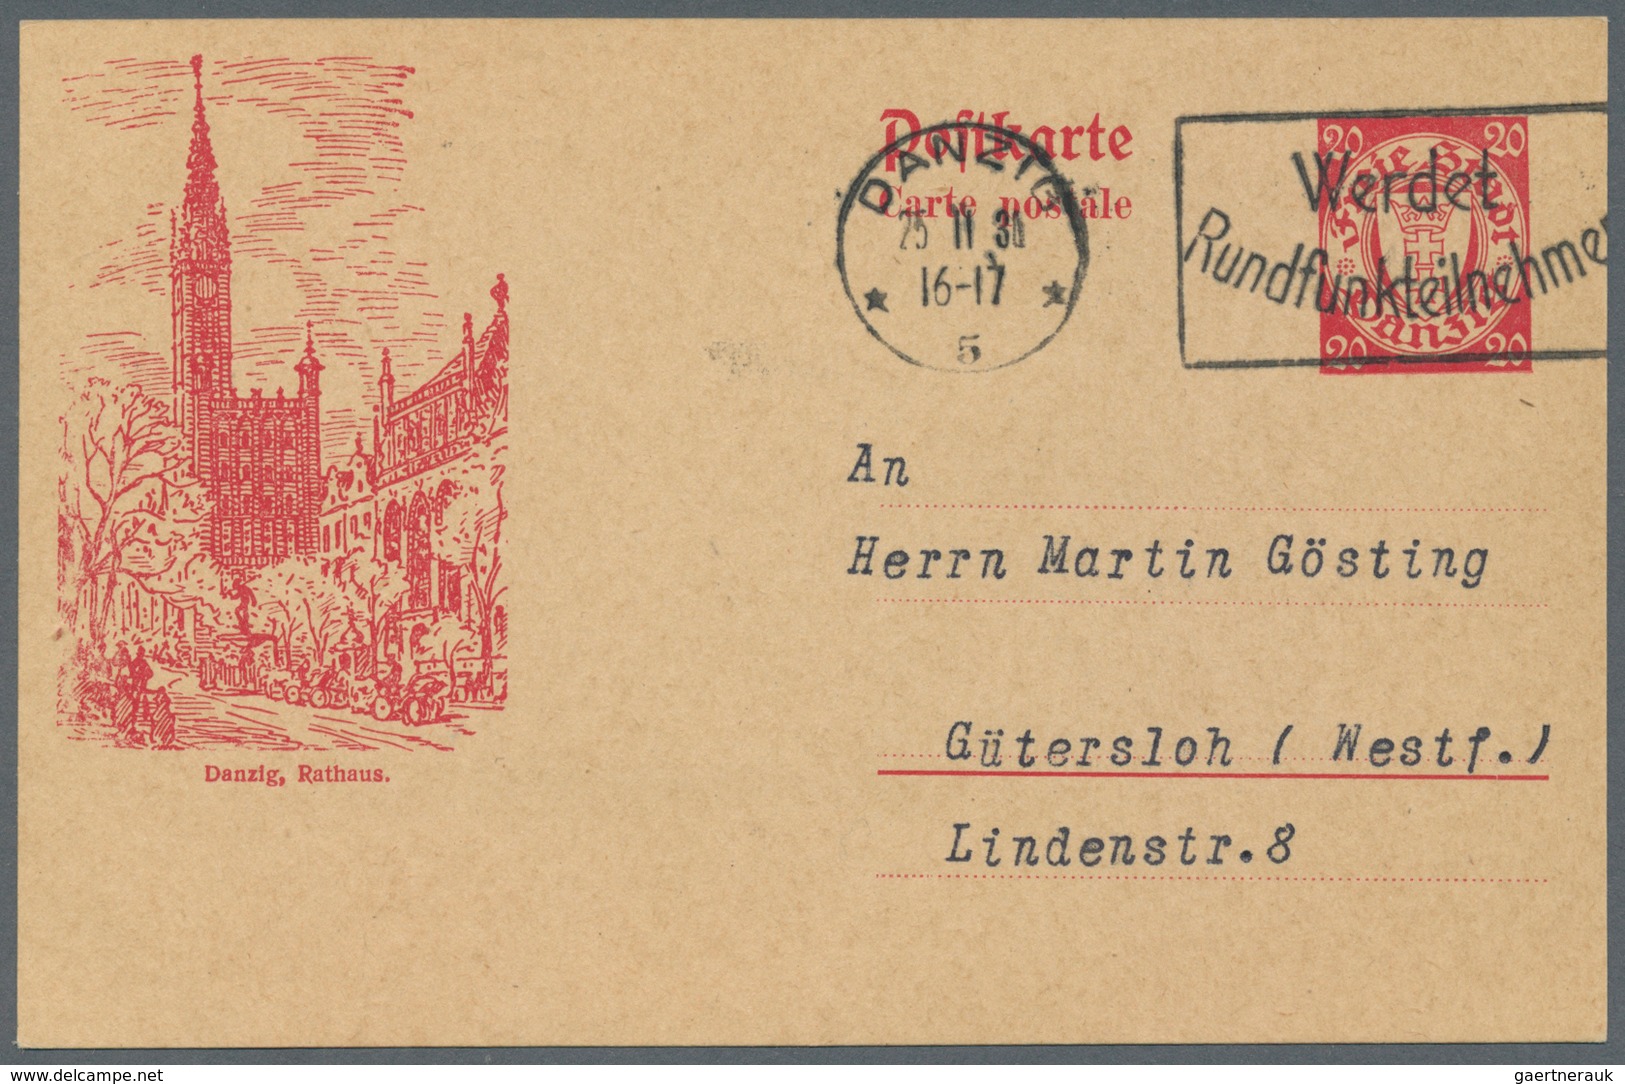 Deutschland - Ganzsachen: Ab 1946, Sammlung in Album mit Schwerpunkt Bizone/BRD/Berlin (und einige f